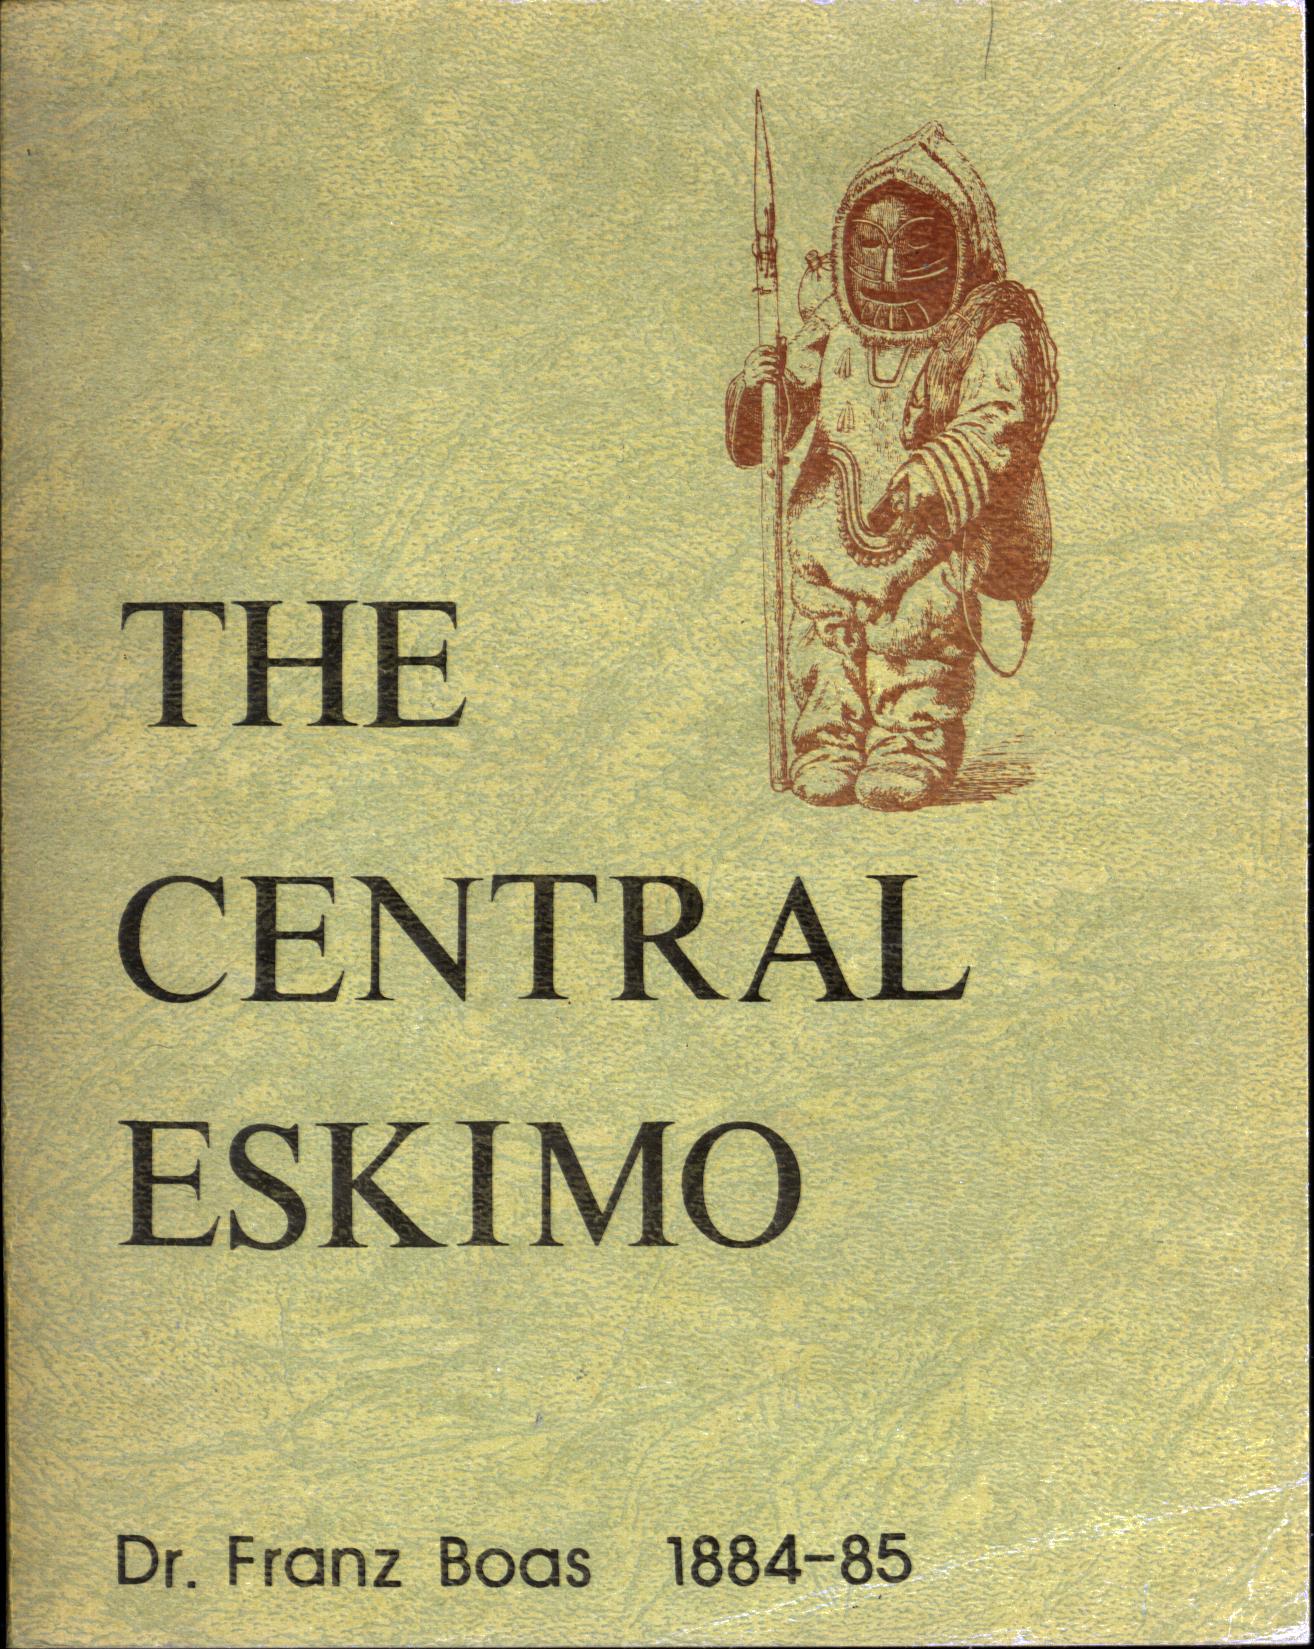 THE CENTRAL ESKIMO